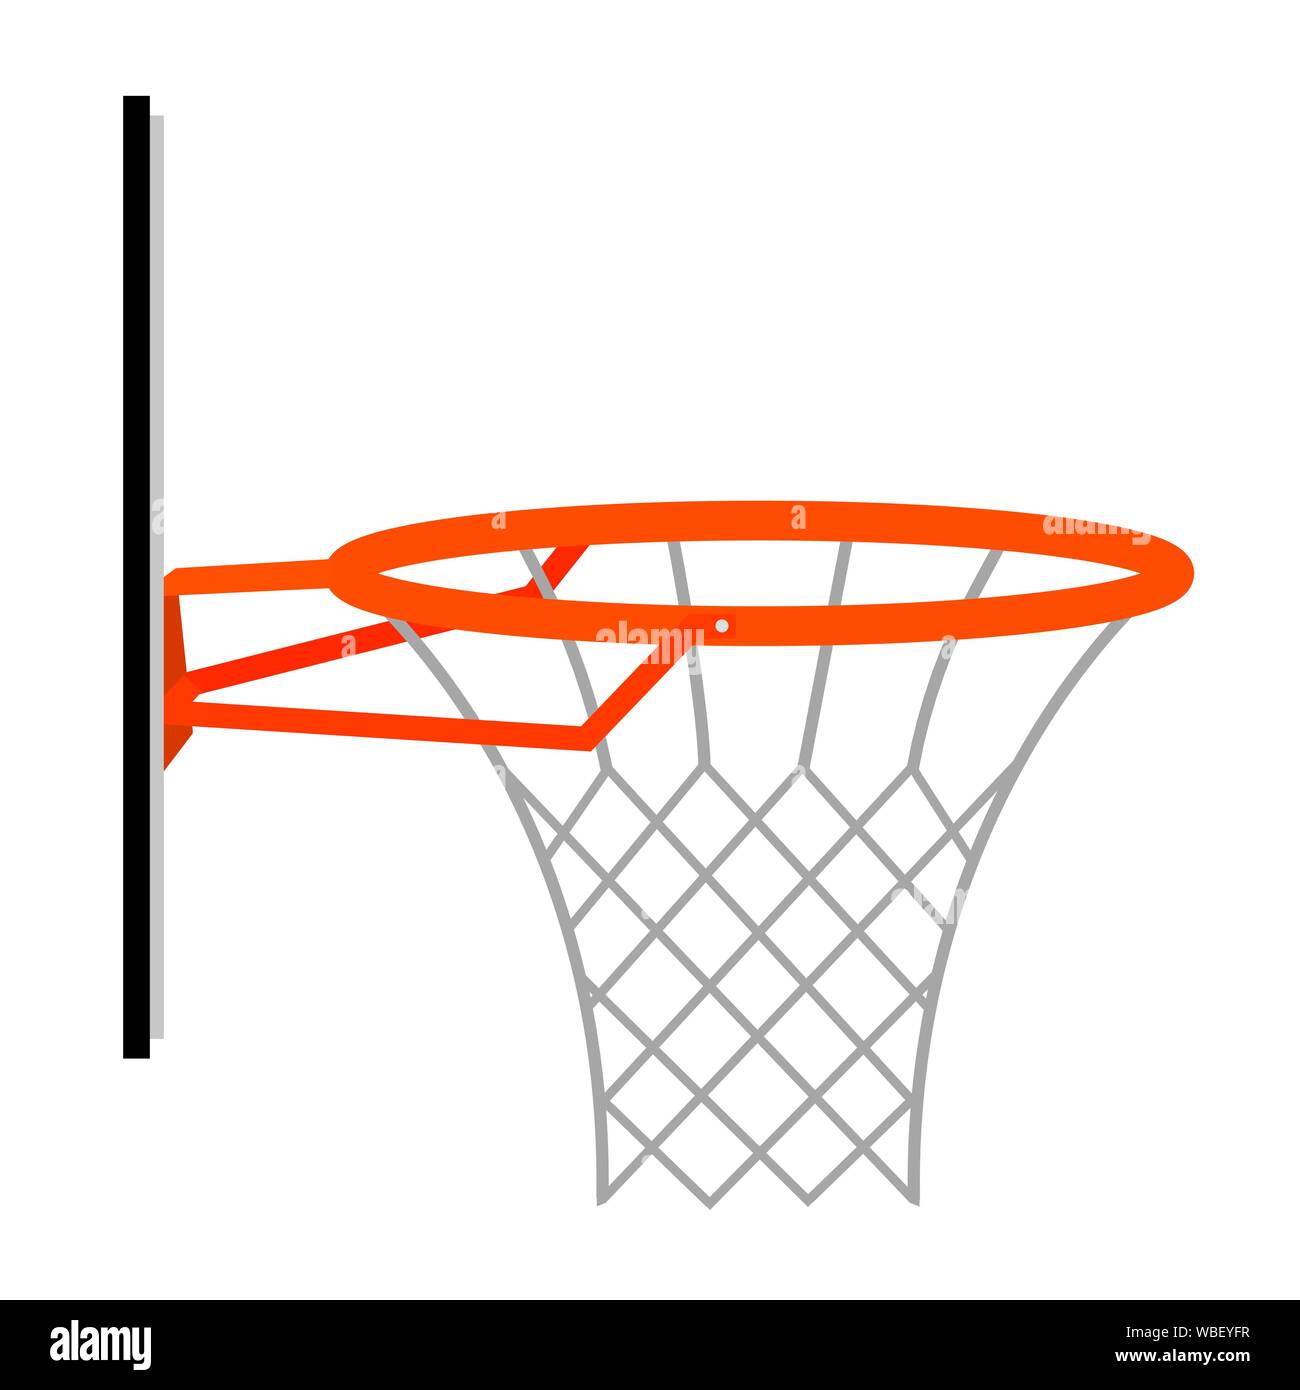 Abstrakte basketball Korb Stock-Vektorgrafik - Alamy